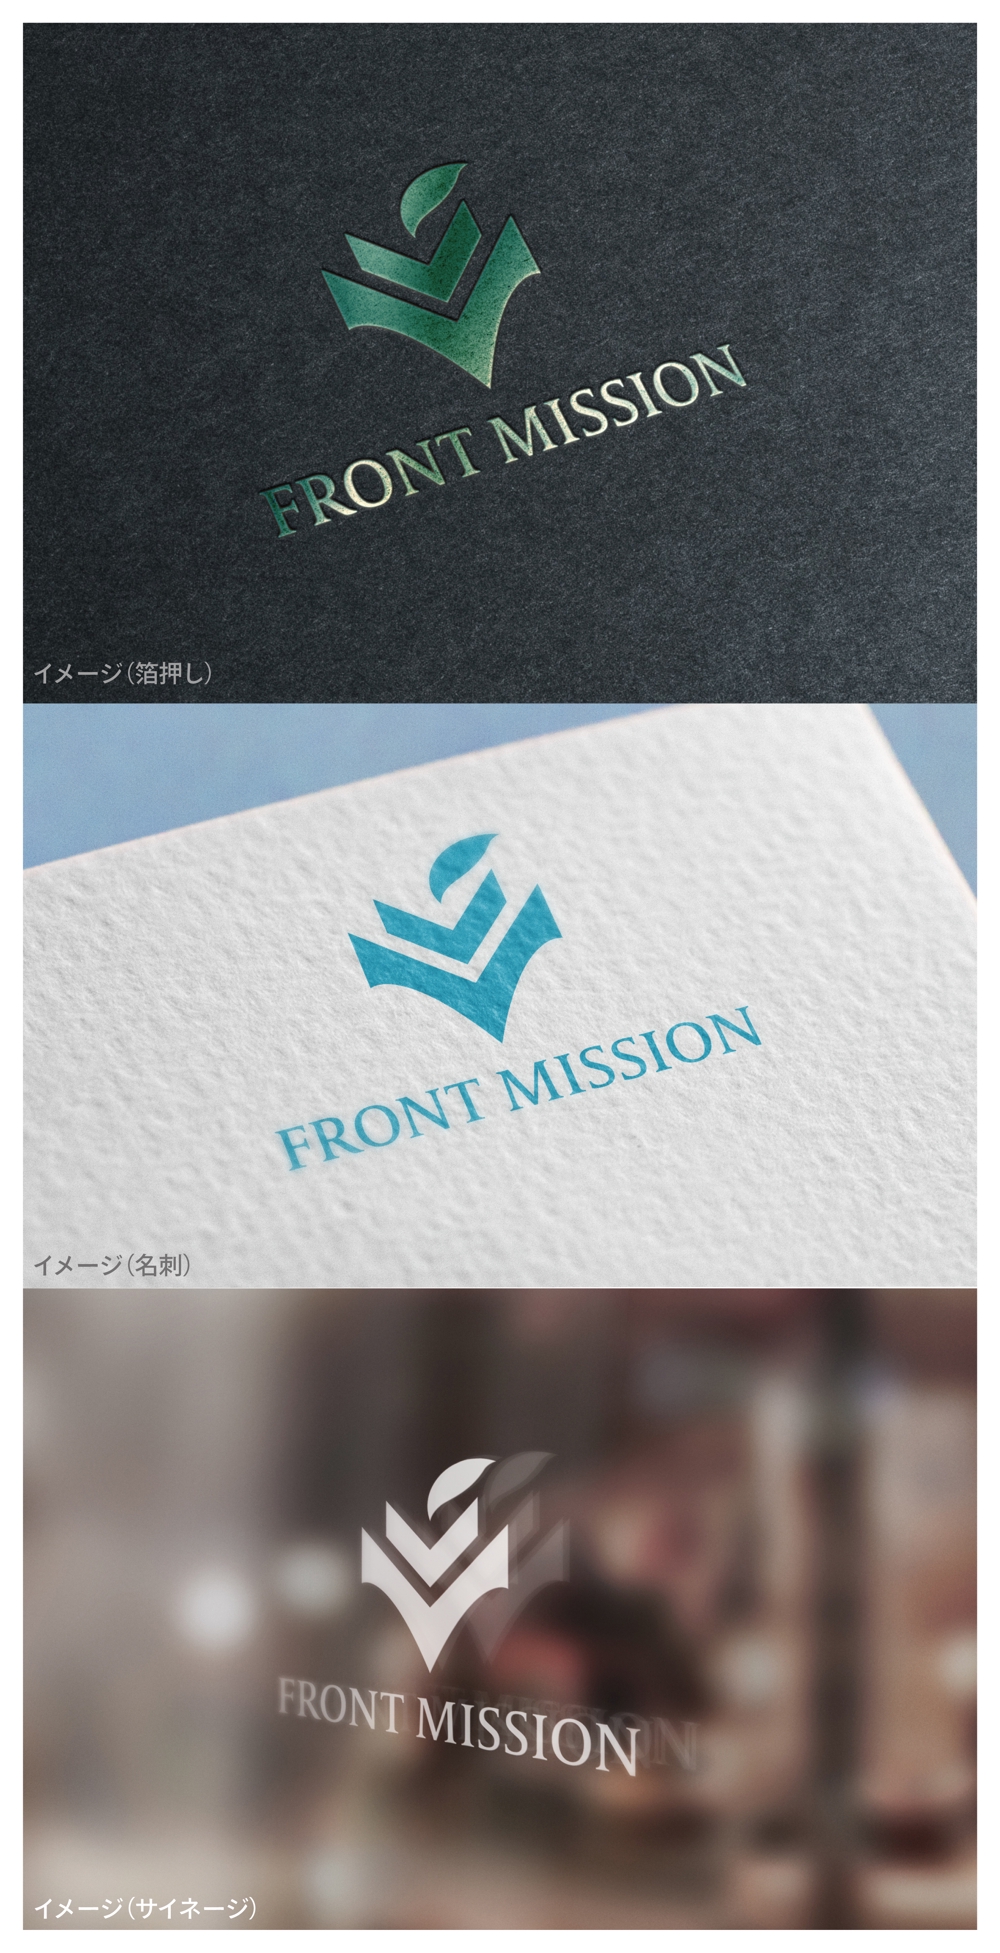 FRONT MISSION_logo01_01.jpg